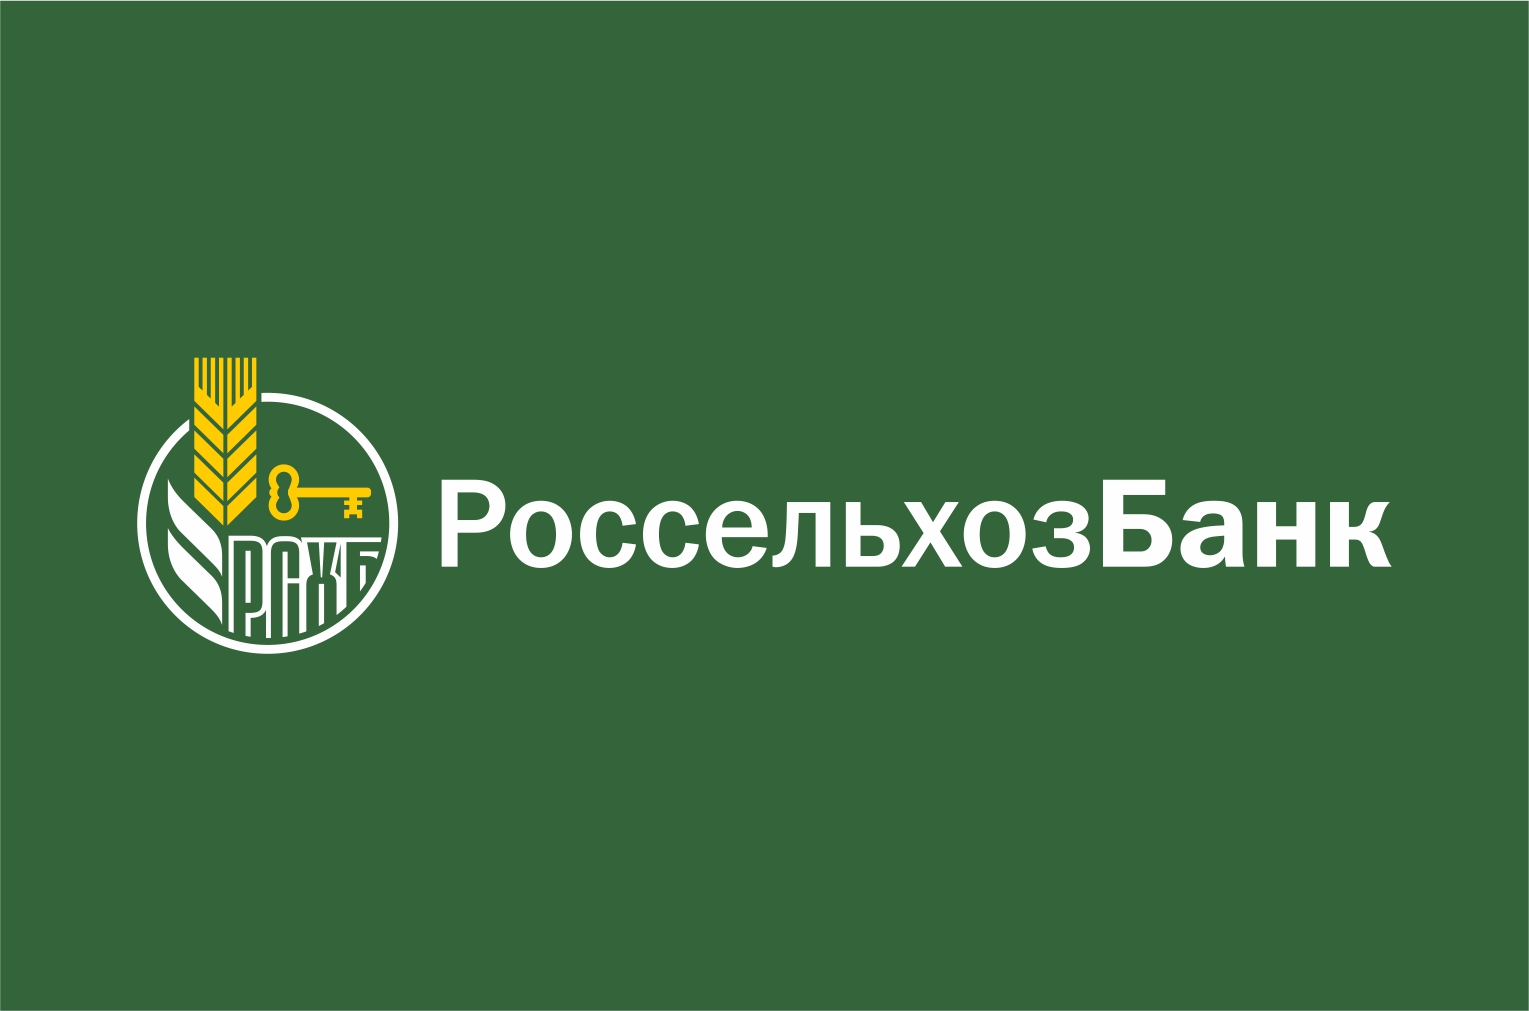 АО «Россельхозбанк» — банк-партнёр «Дня Уральского поля-2022»